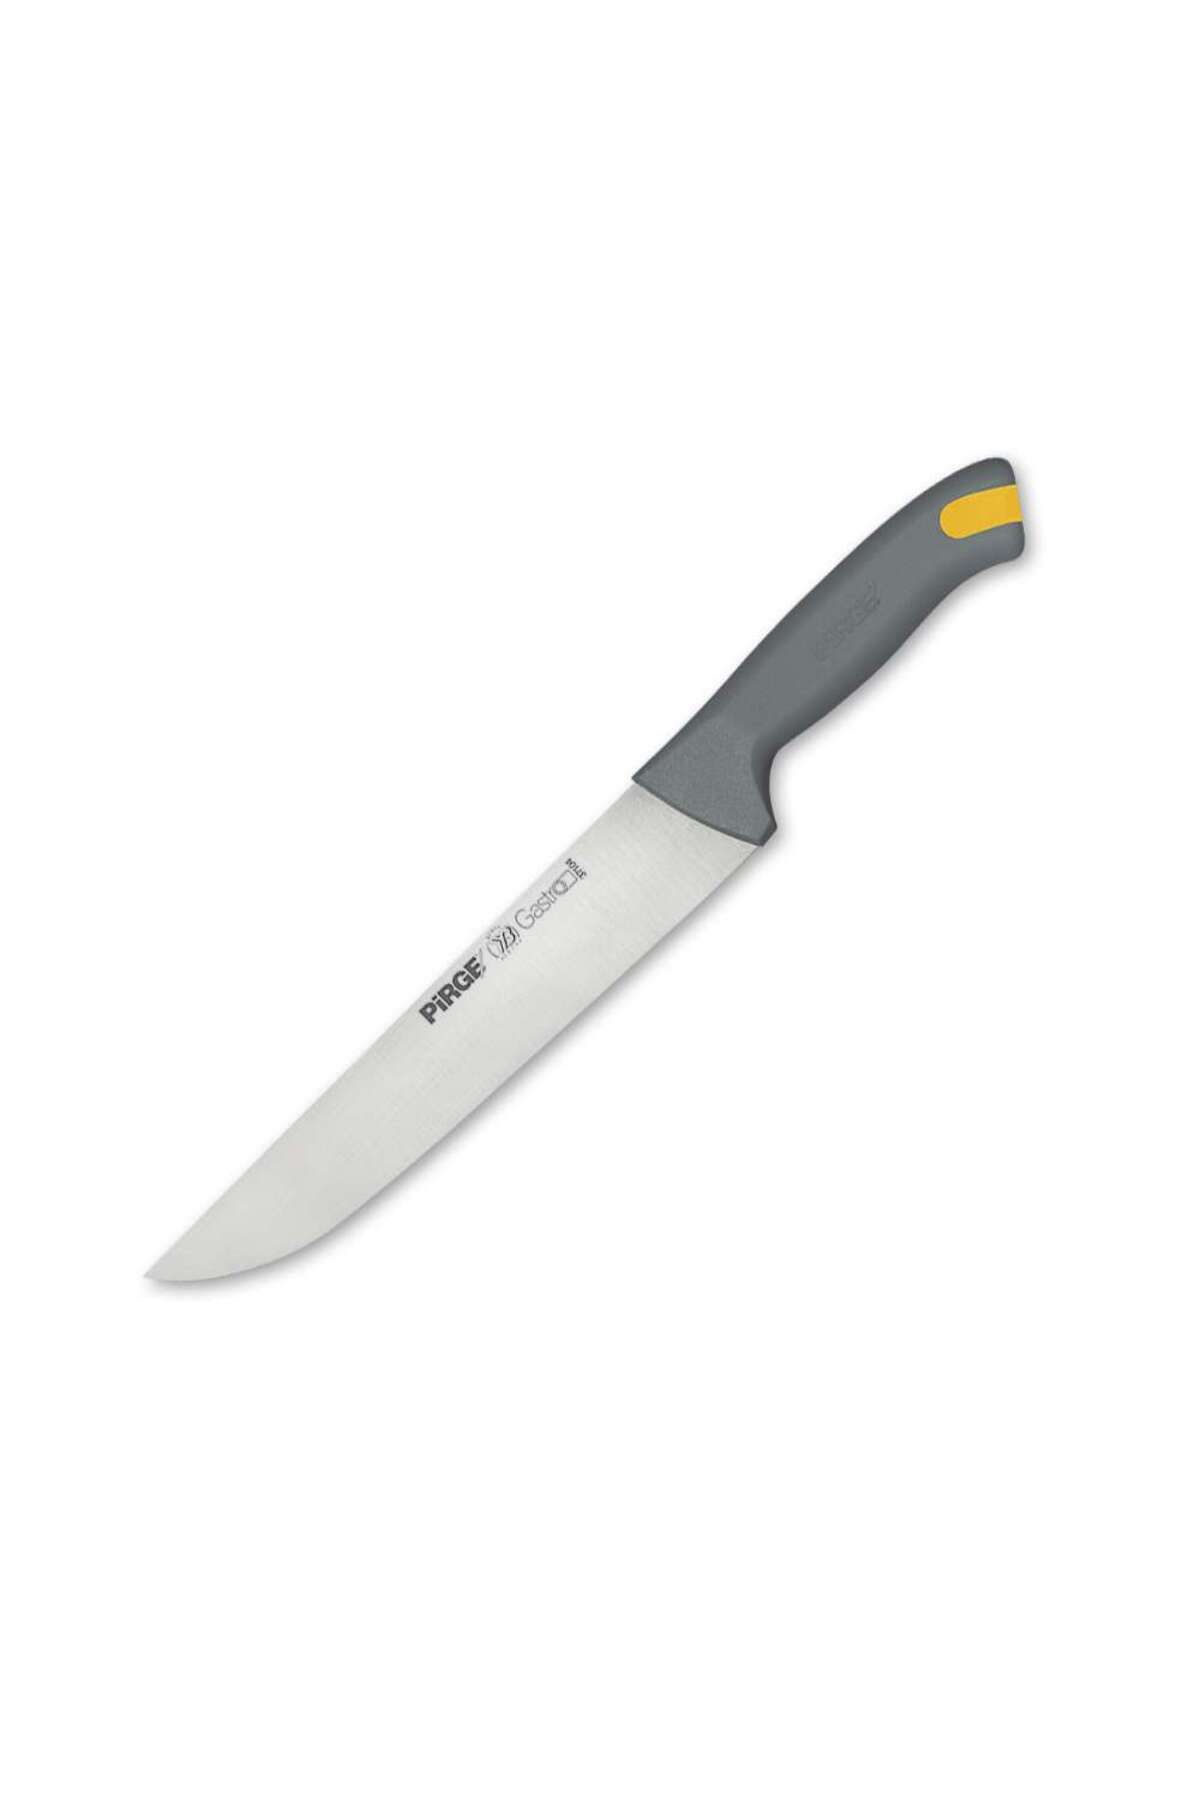 Pirge Gastro Kasap Bıçağı No.4 21 cm GRİ - 37104